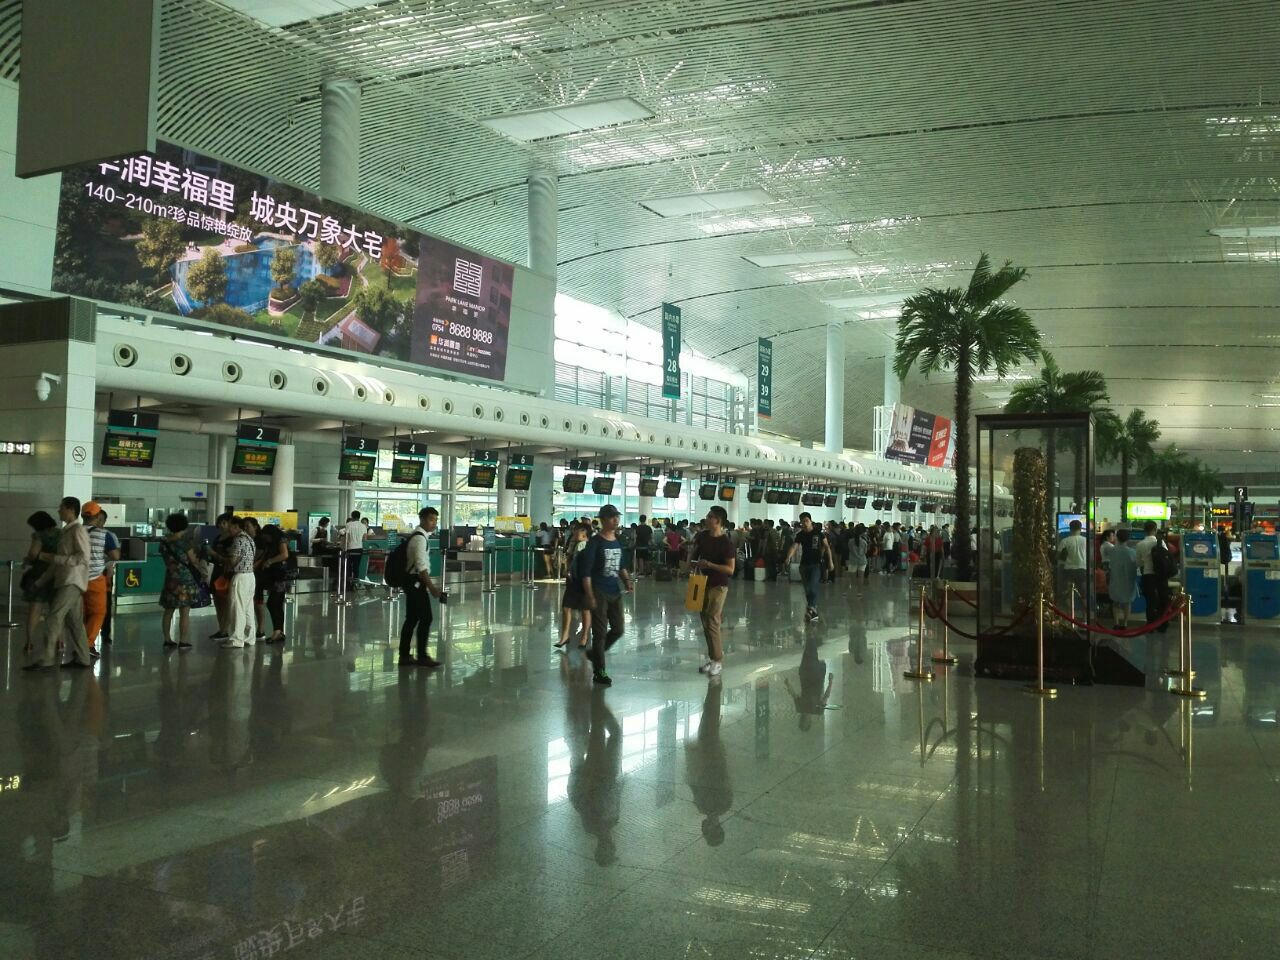 揭阳潮汕机场规模不大,航班不是很多,所以机场显得特别的安静.